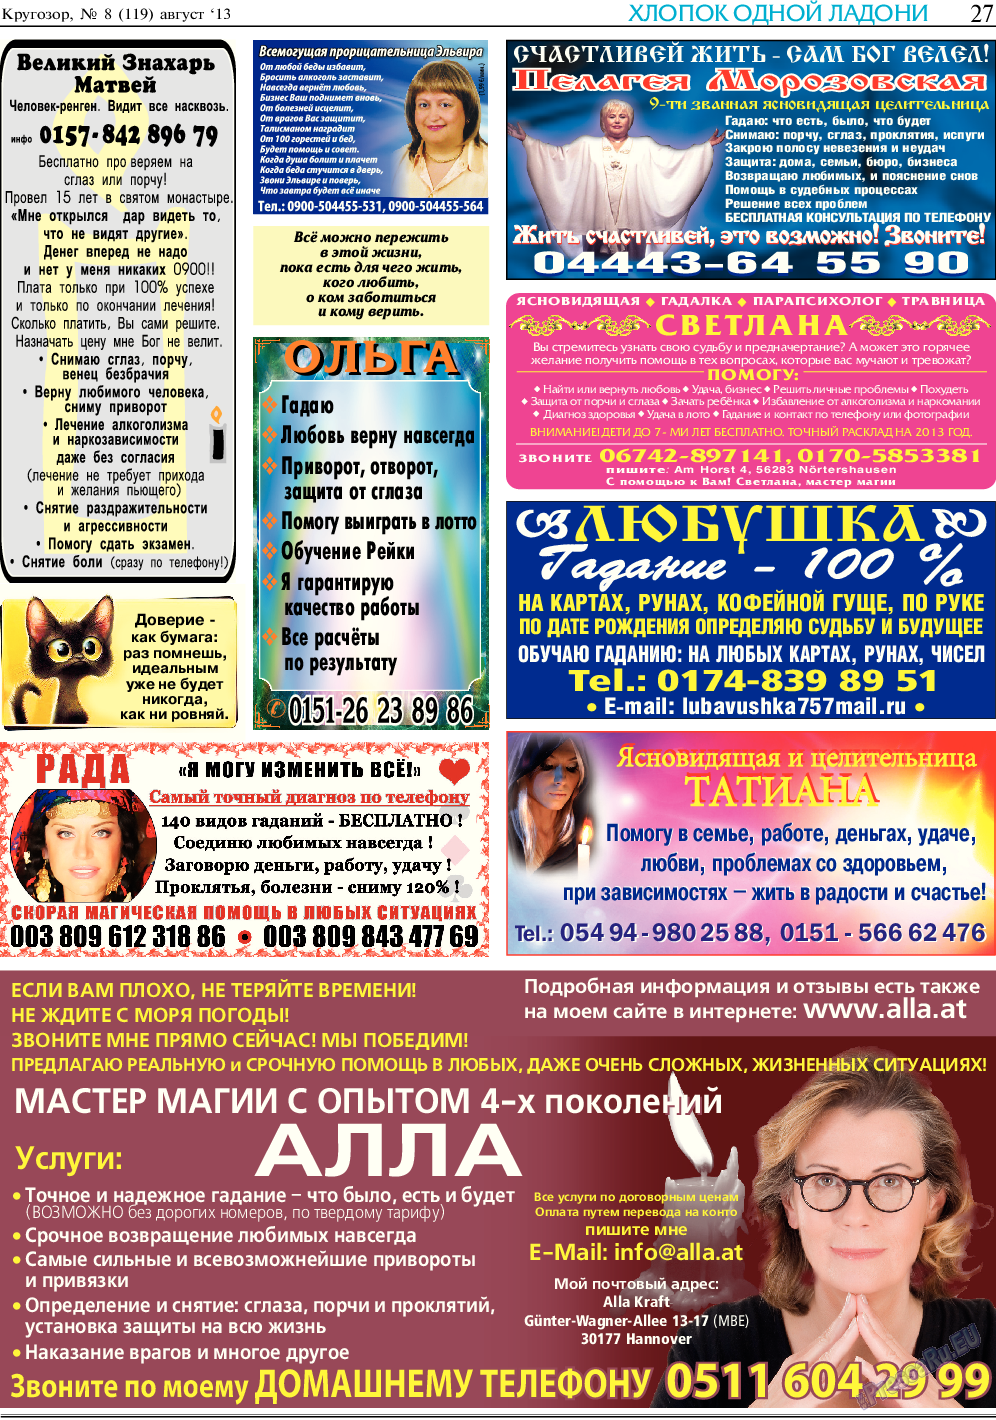 Кругозор, газета. 2013 №8 стр.27